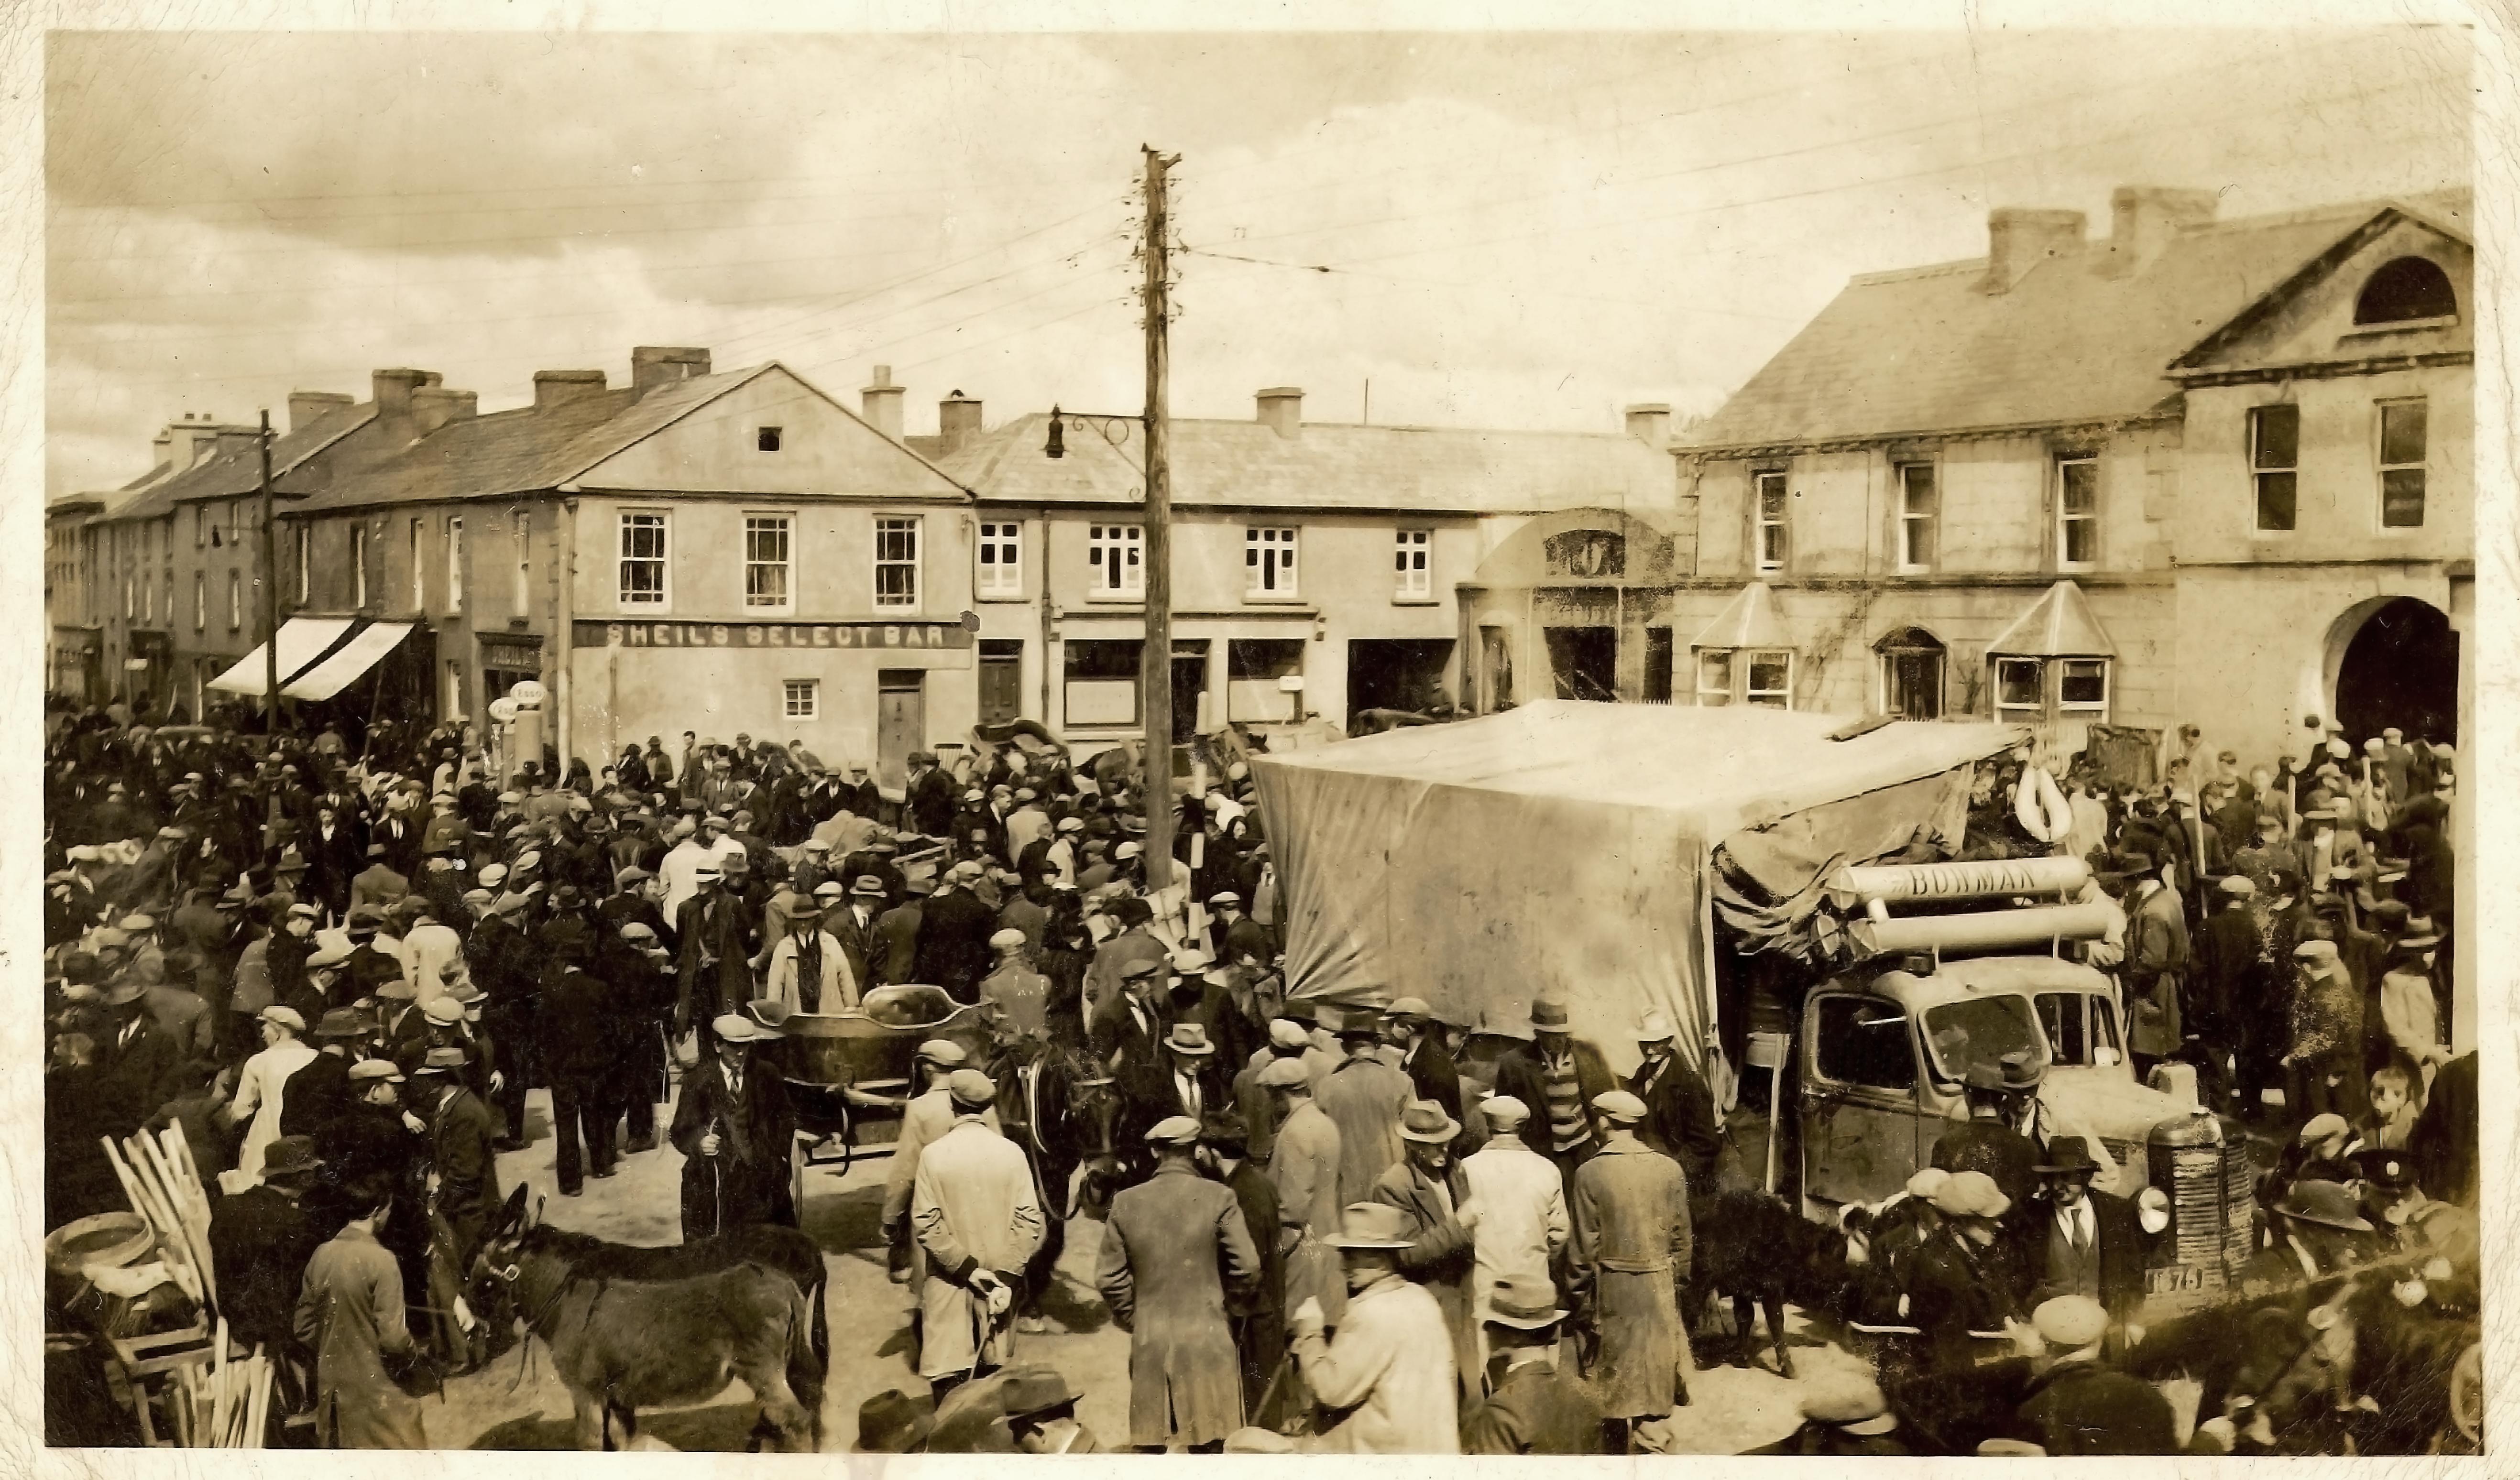 Pre-1940s farmer's market, Ireland. Image: Wikipedia.